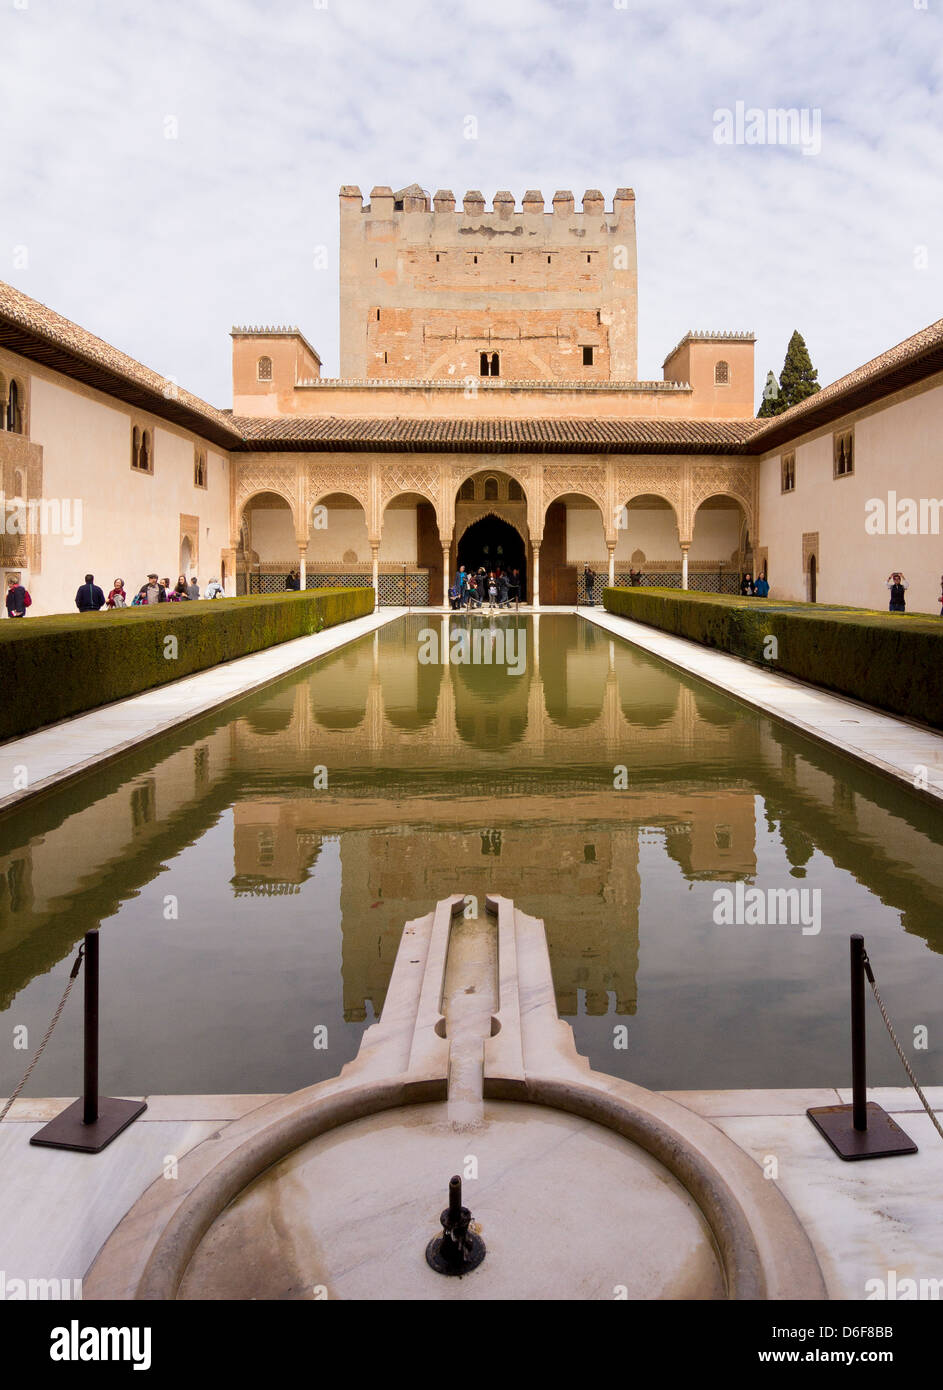 La Cour des Myrtes, Patio de los Arrayanes, Comores Palace, palais Nasrides, Alhambra, Granada, Espagne Banque D'Images